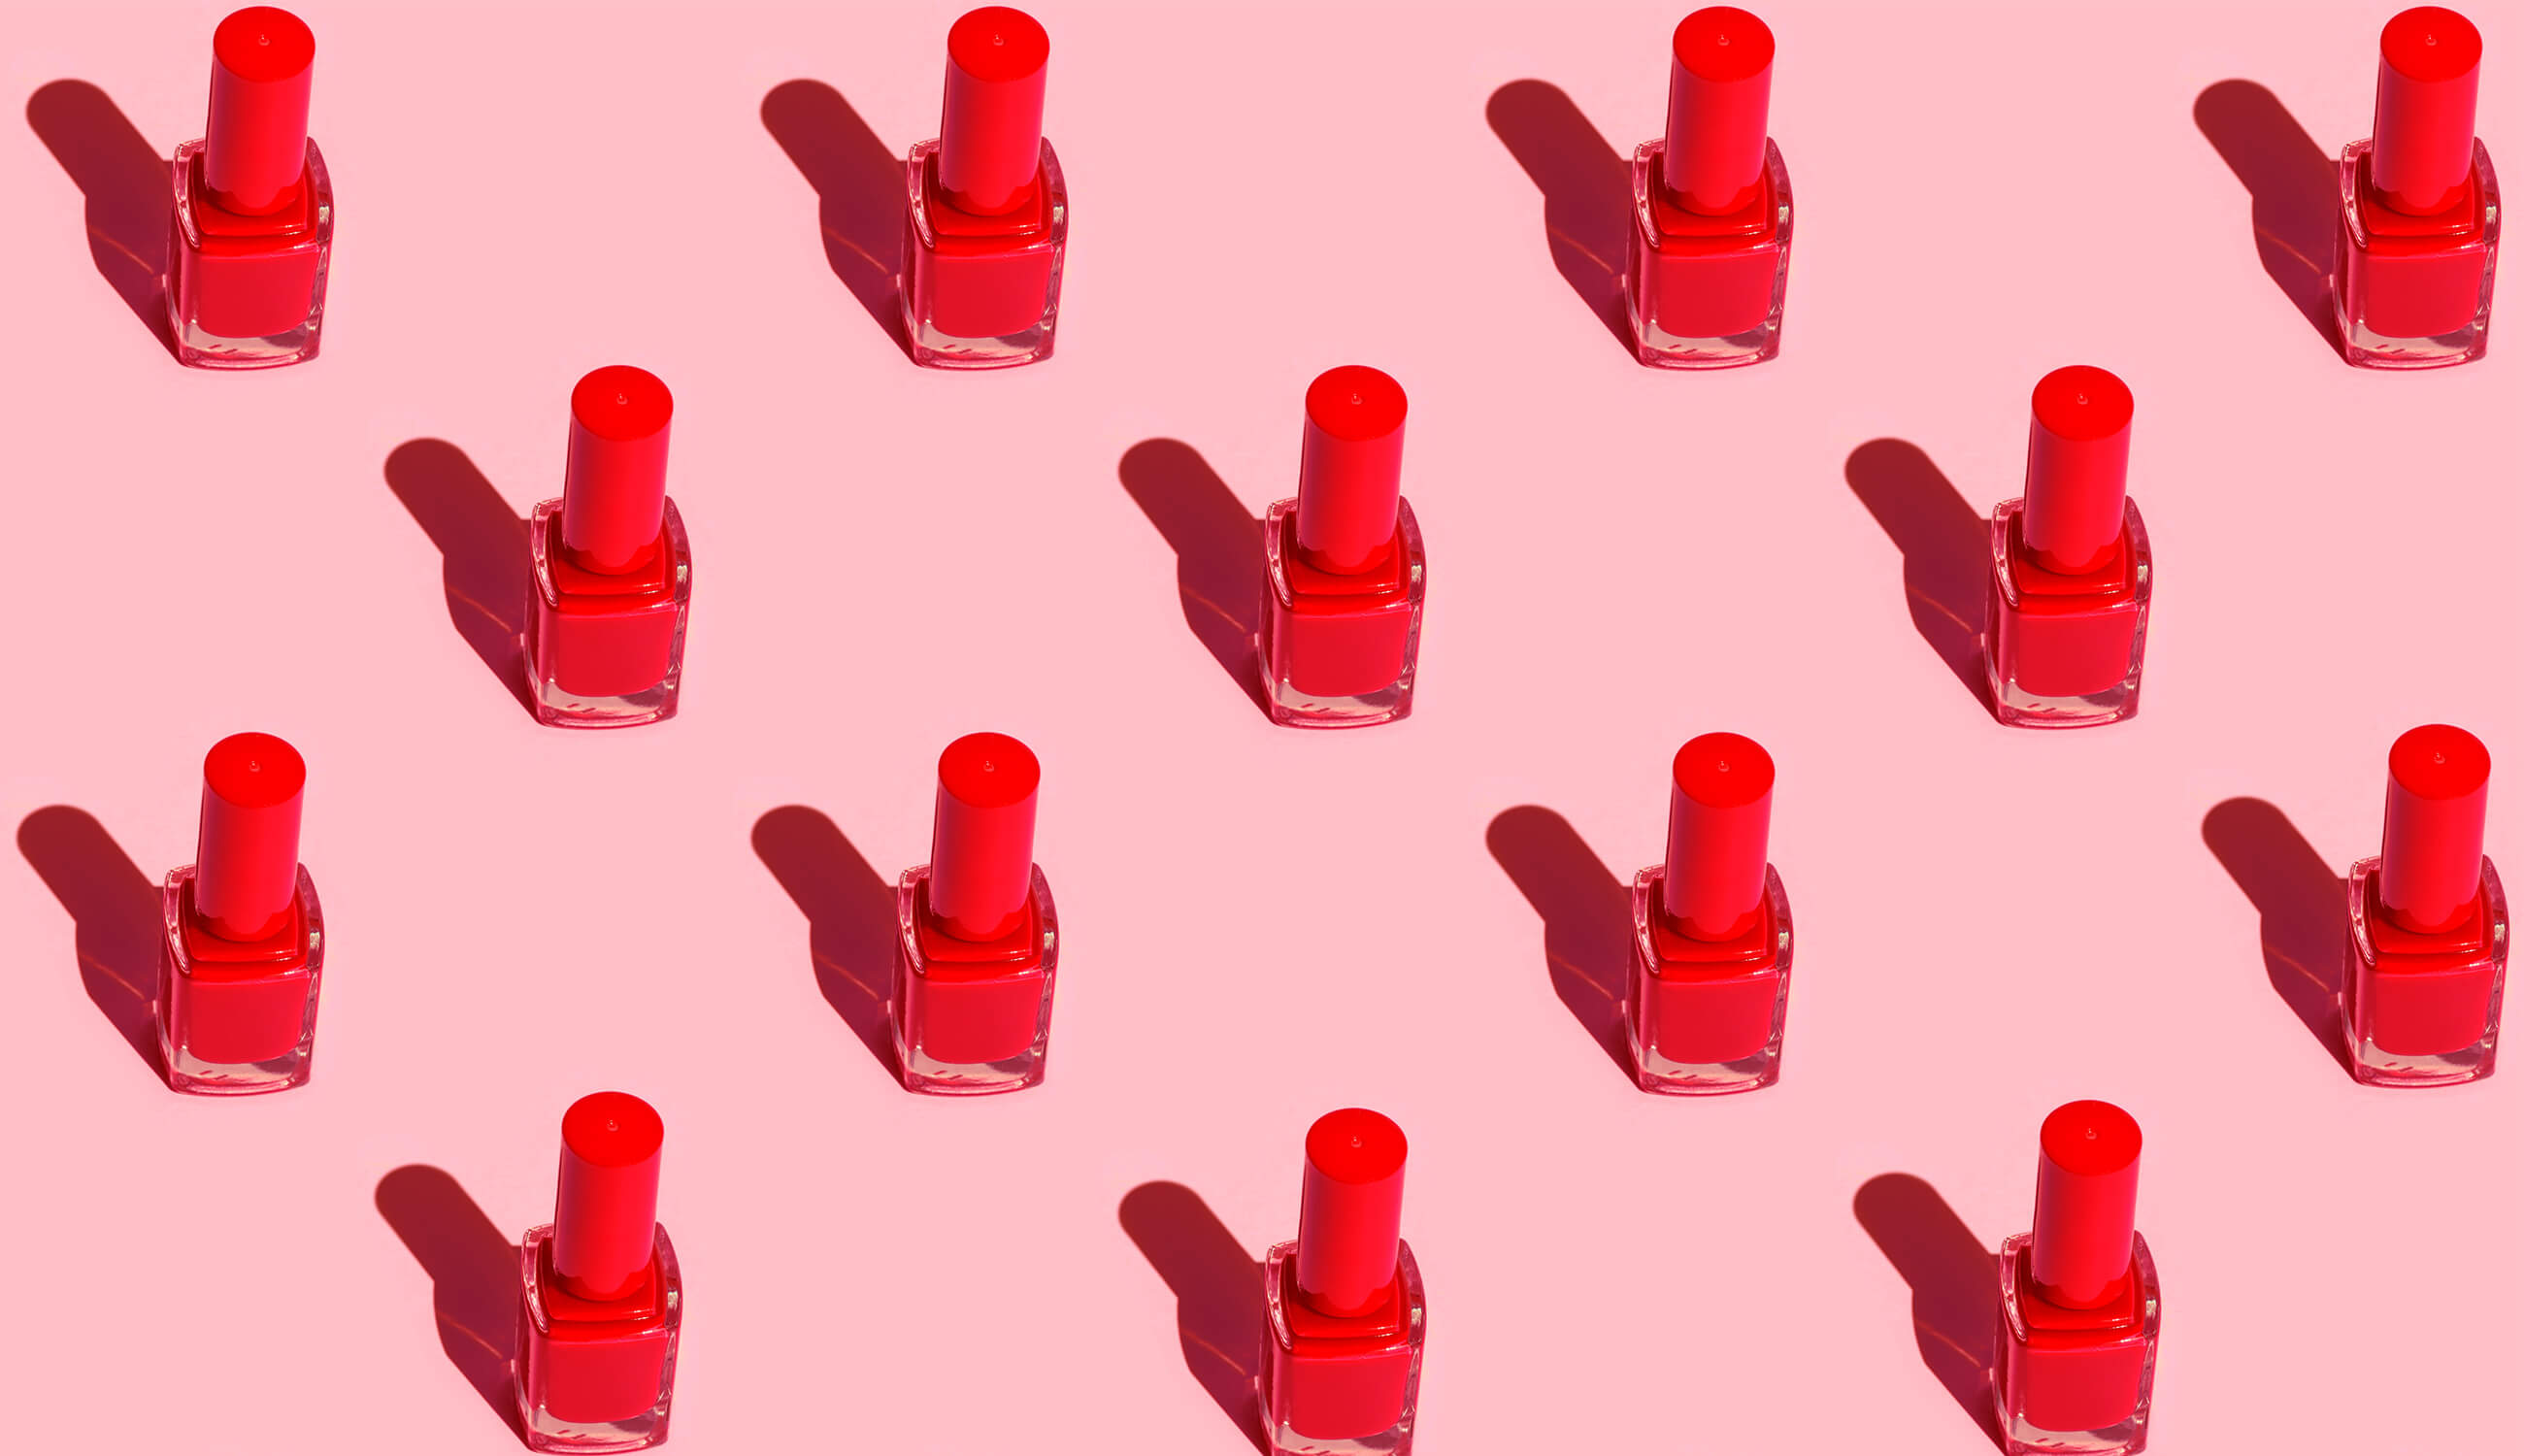 Main_red nail polish bottles.jpg